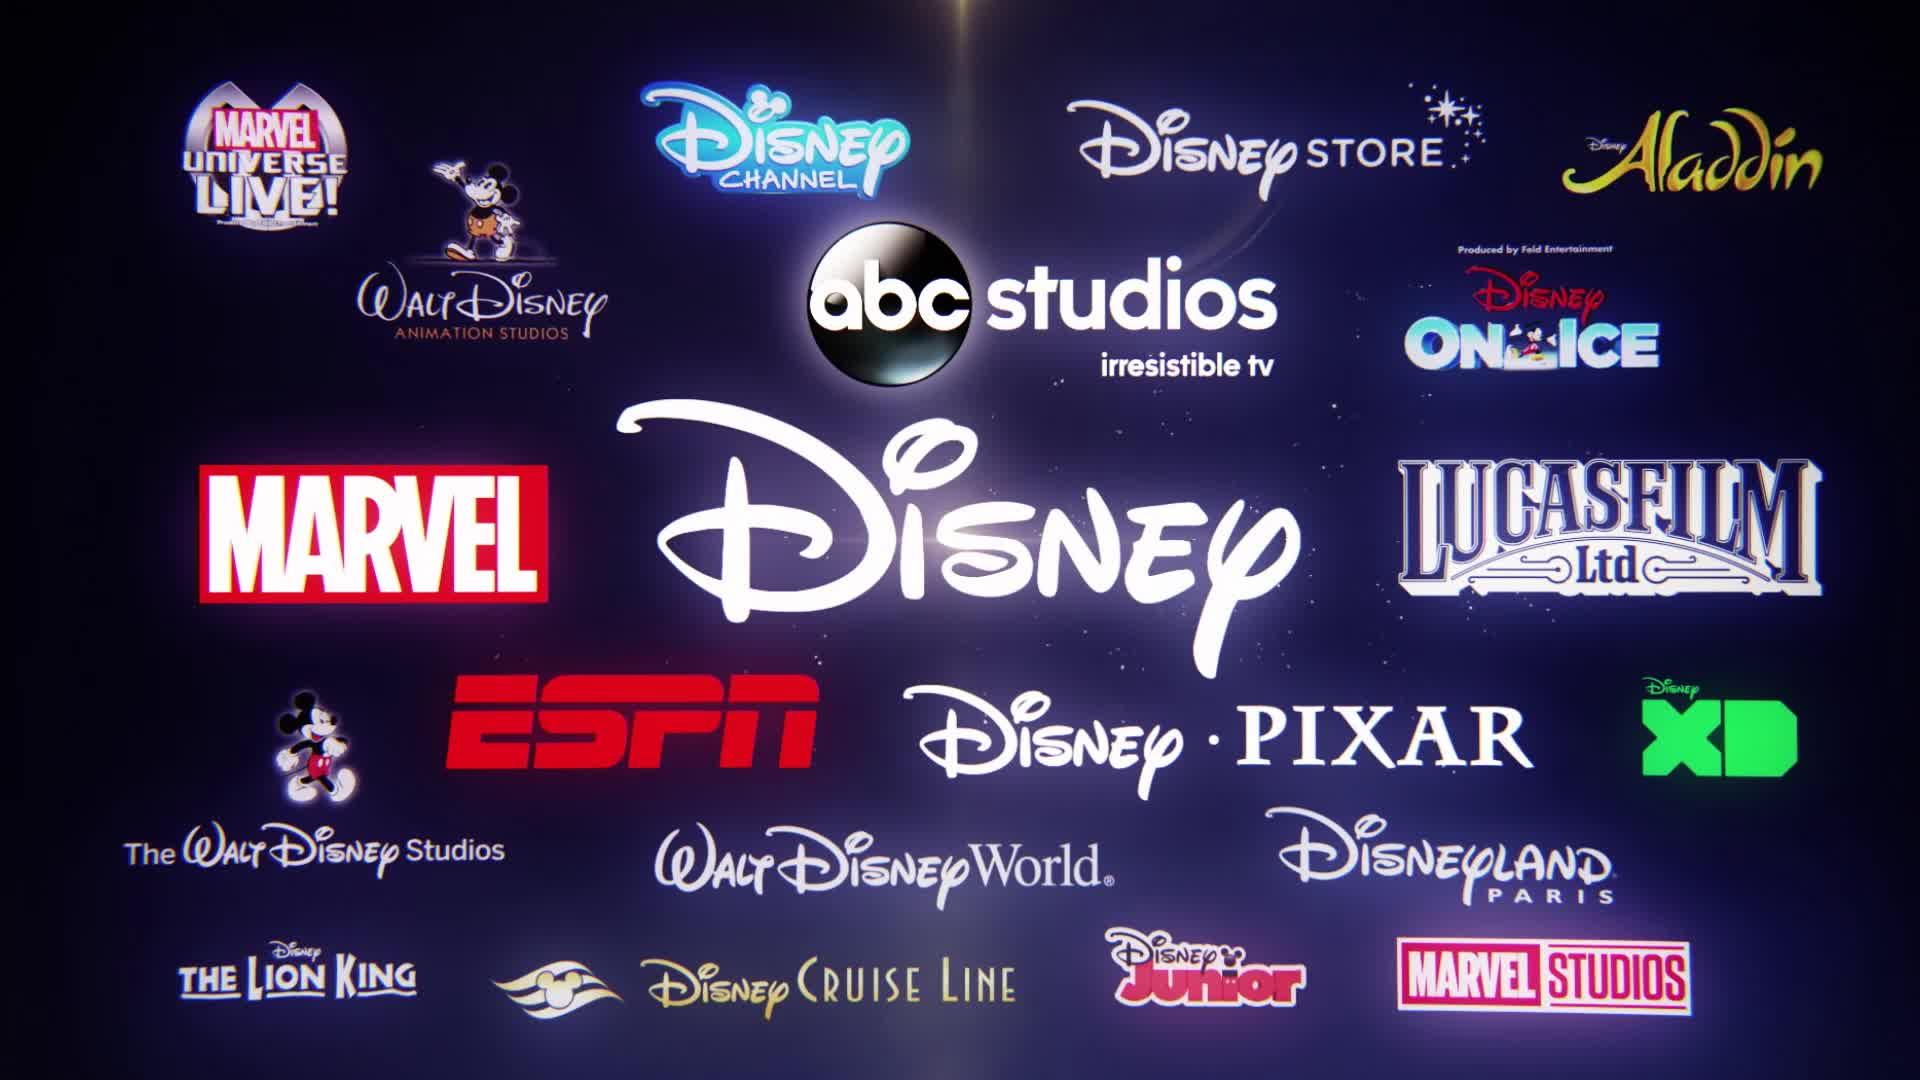 Kontakt | Disney Sverige | Officiell hemsida för Disney i Sverige